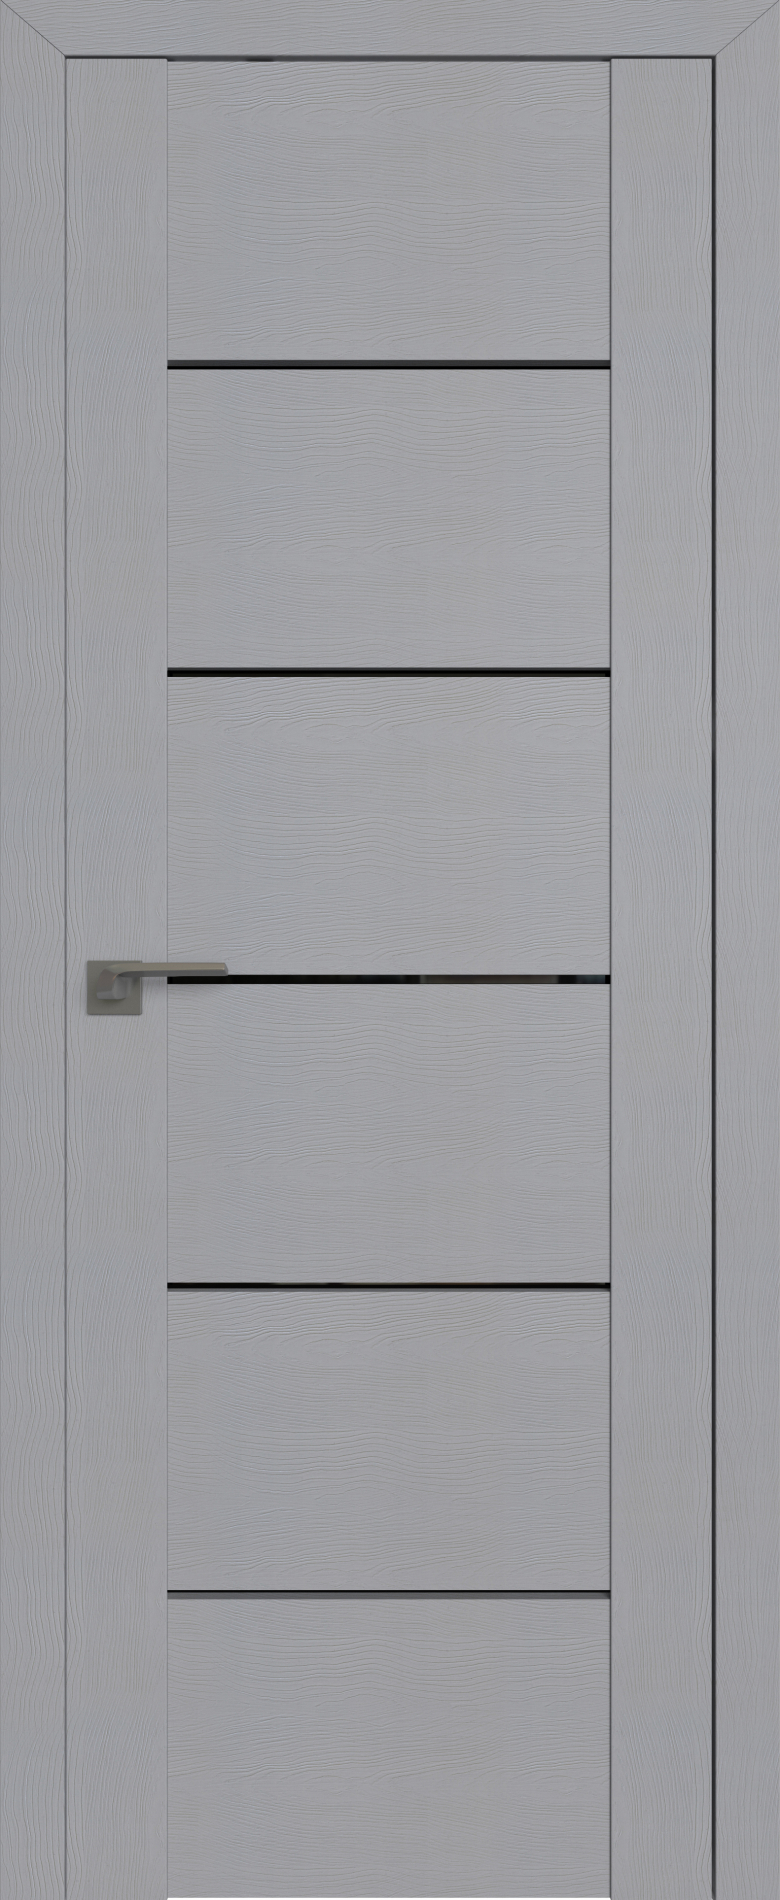 межкомнатные двери  Profil Doors 99STP Pine Manhattan grey